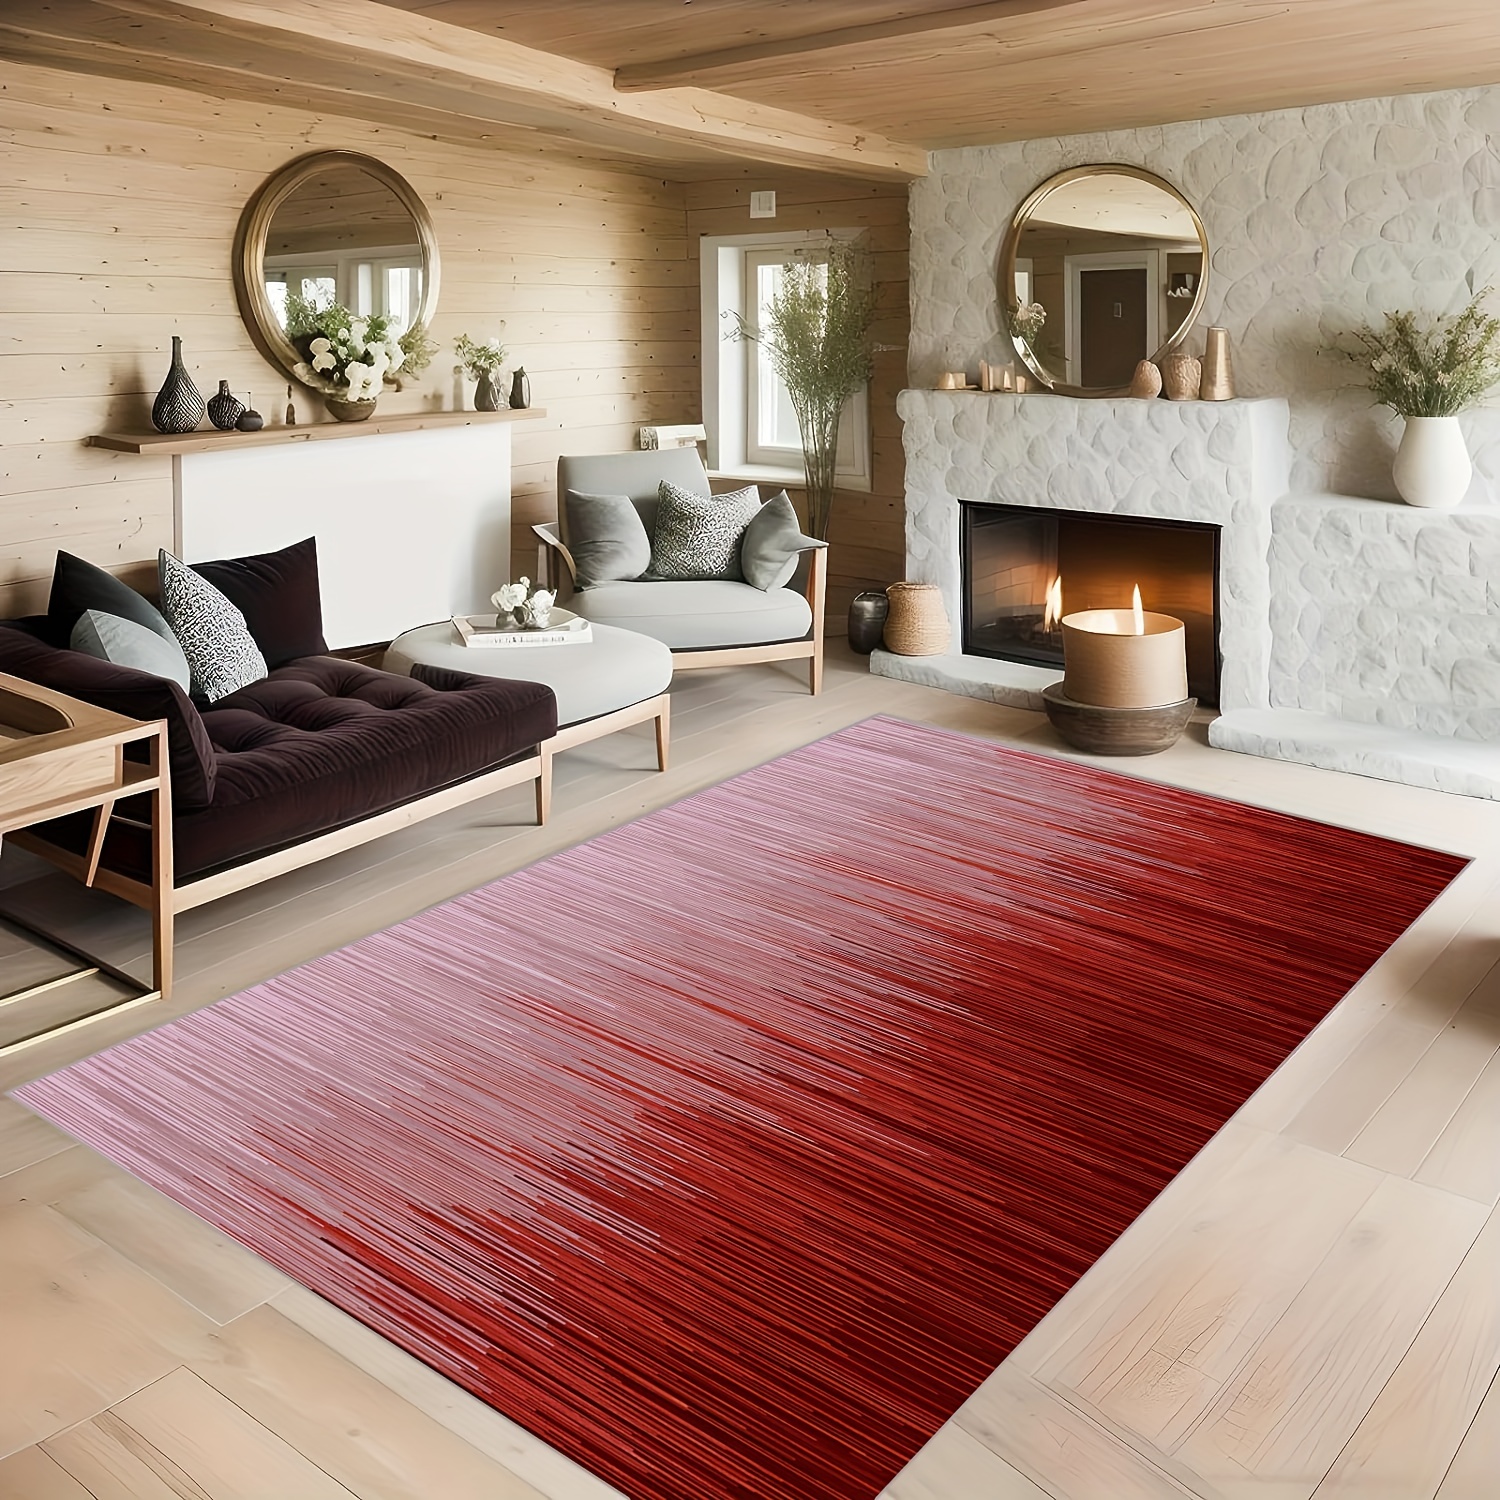 Modern Large Area Rugs Living Room Bedroom Carpet Soft Floor Mat Rug Non  Slip